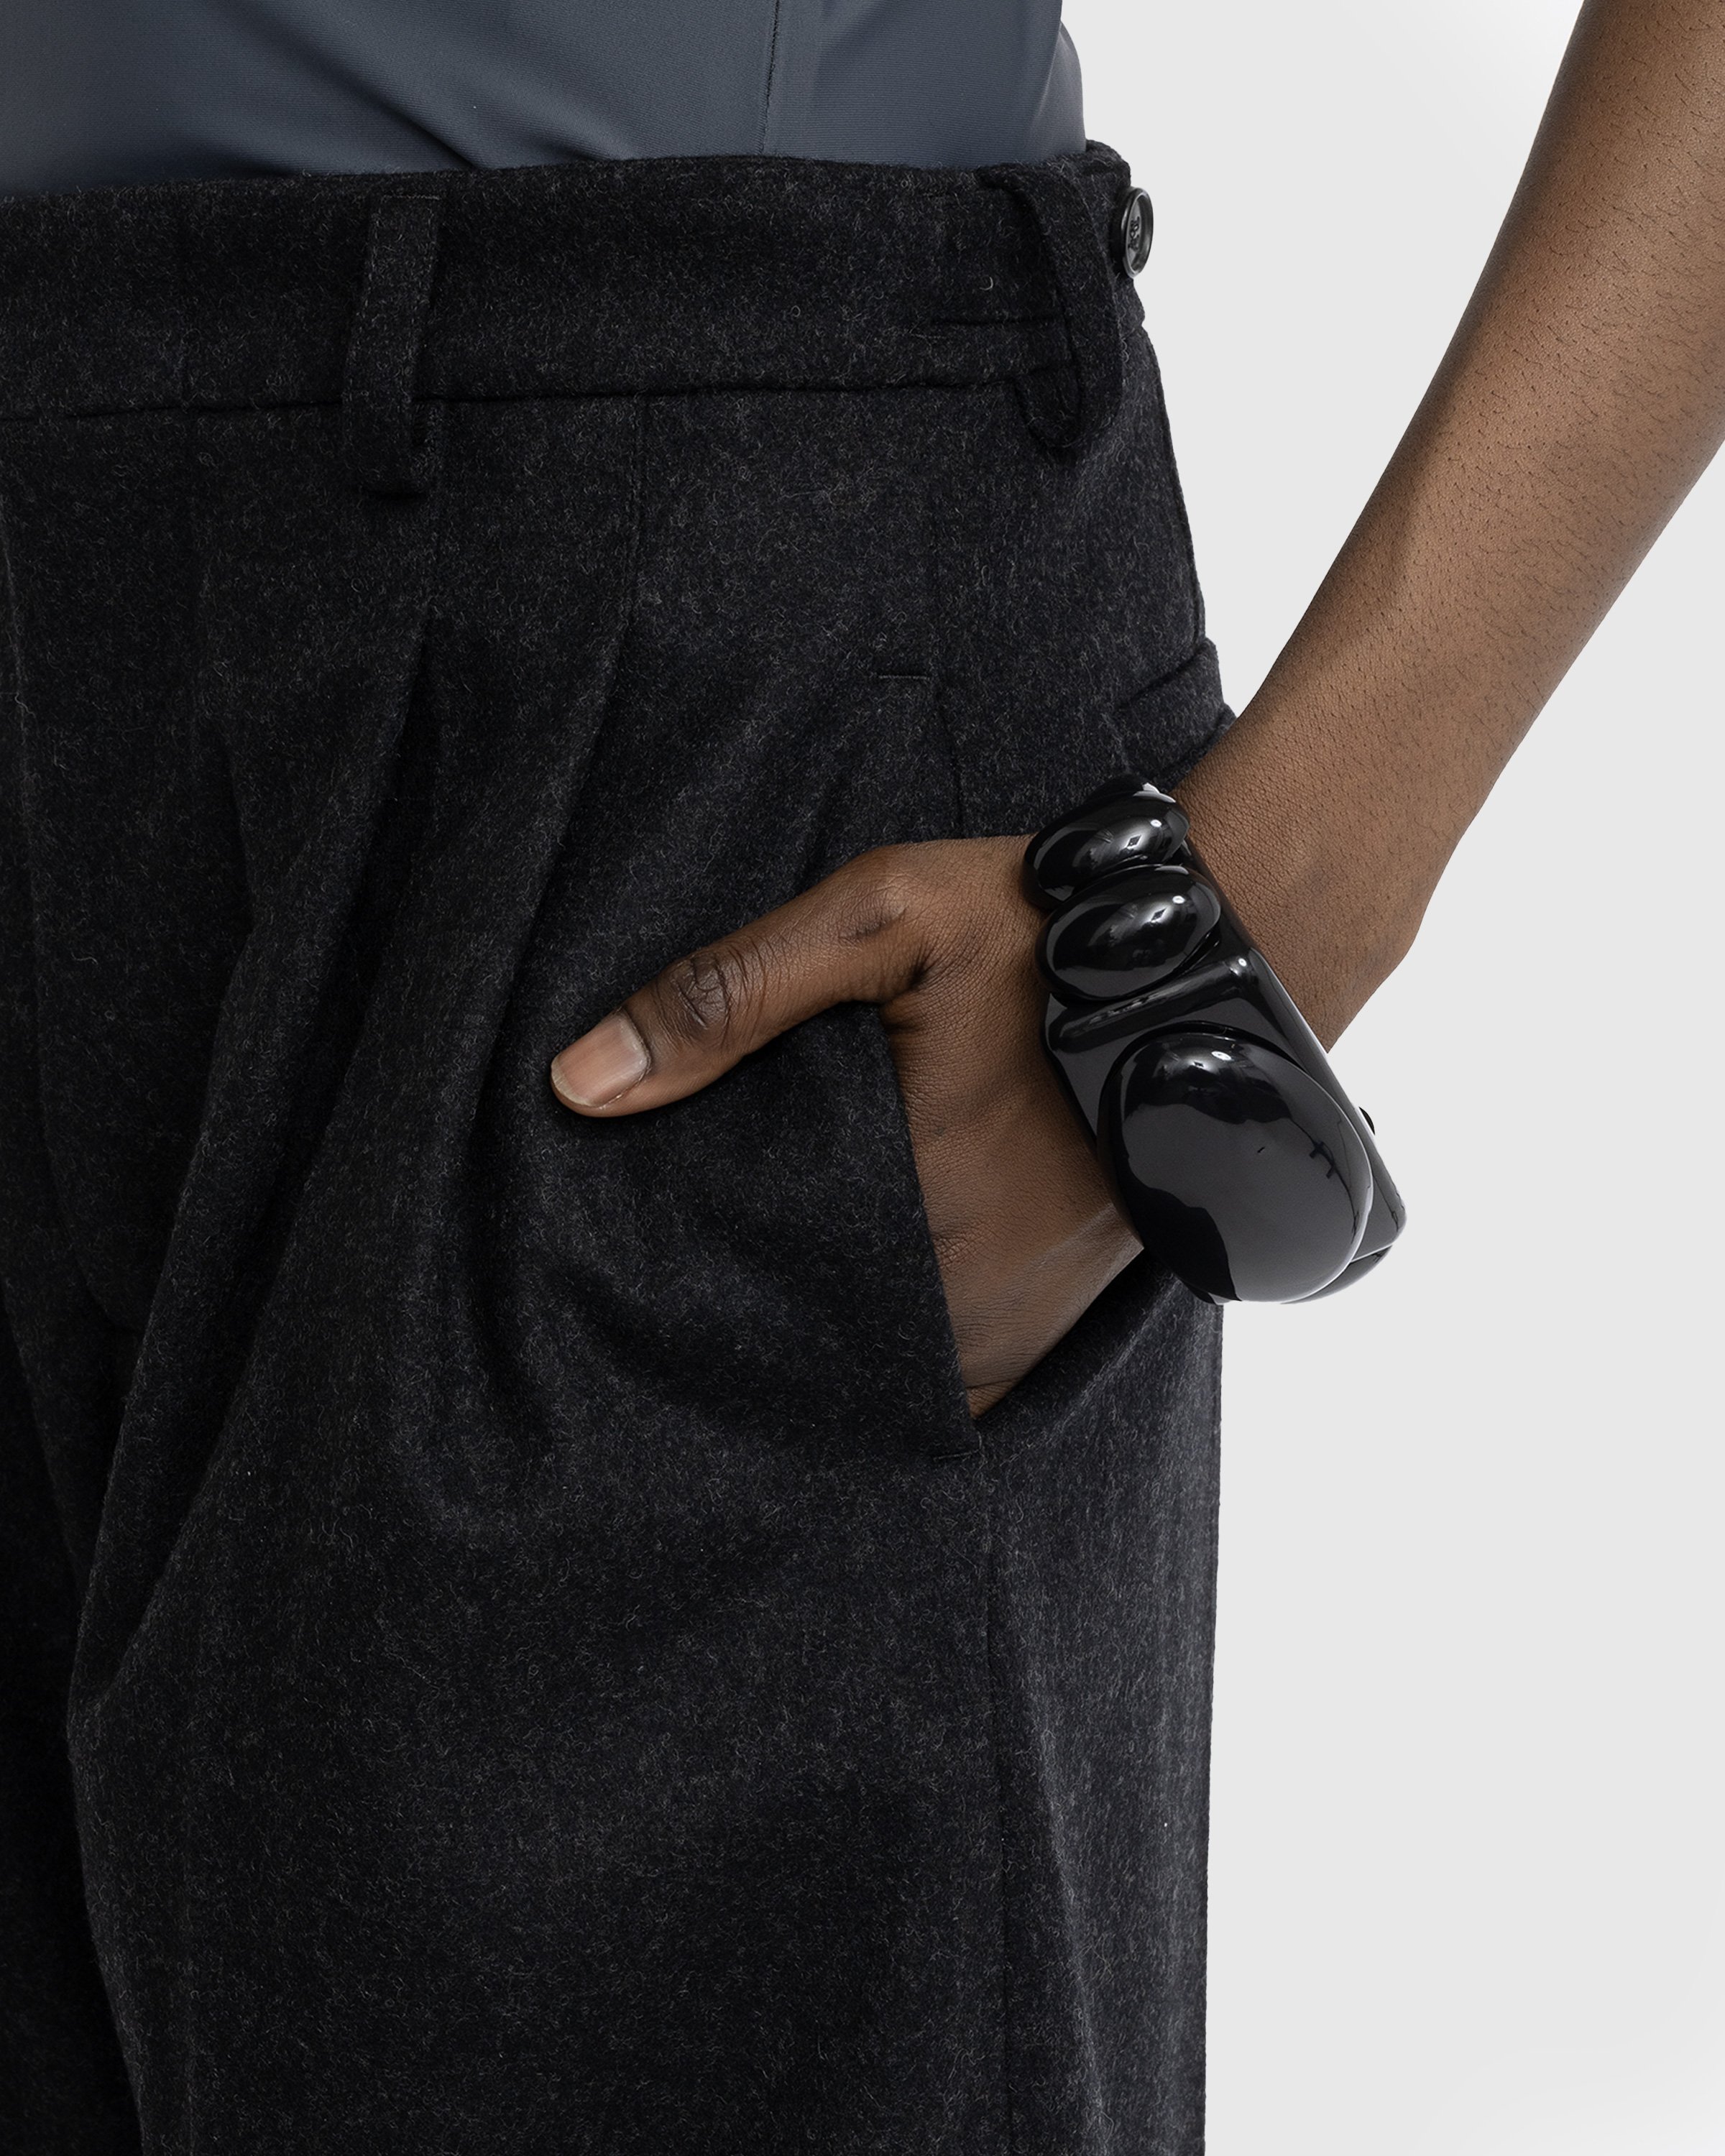 Jean Paul Gaultier - Shiny Square Bracelet Black - Accessories - Black - Image 5